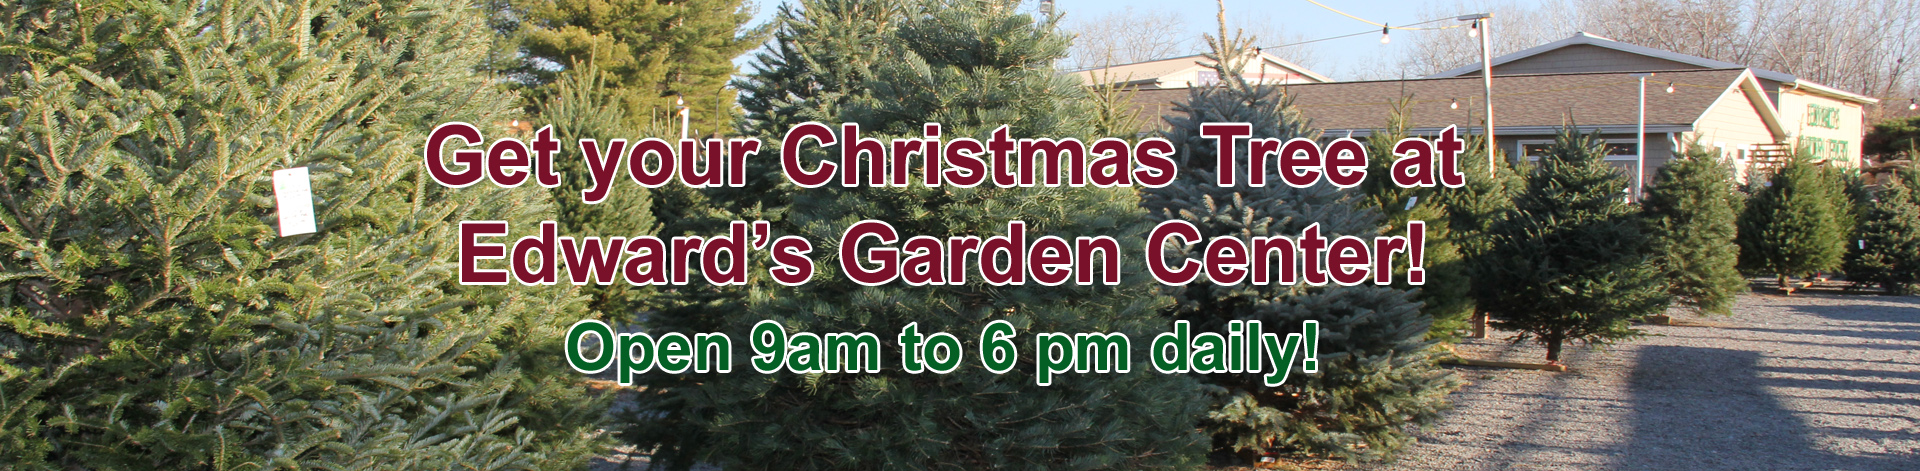 Edward's Garden Center Christmas Trees